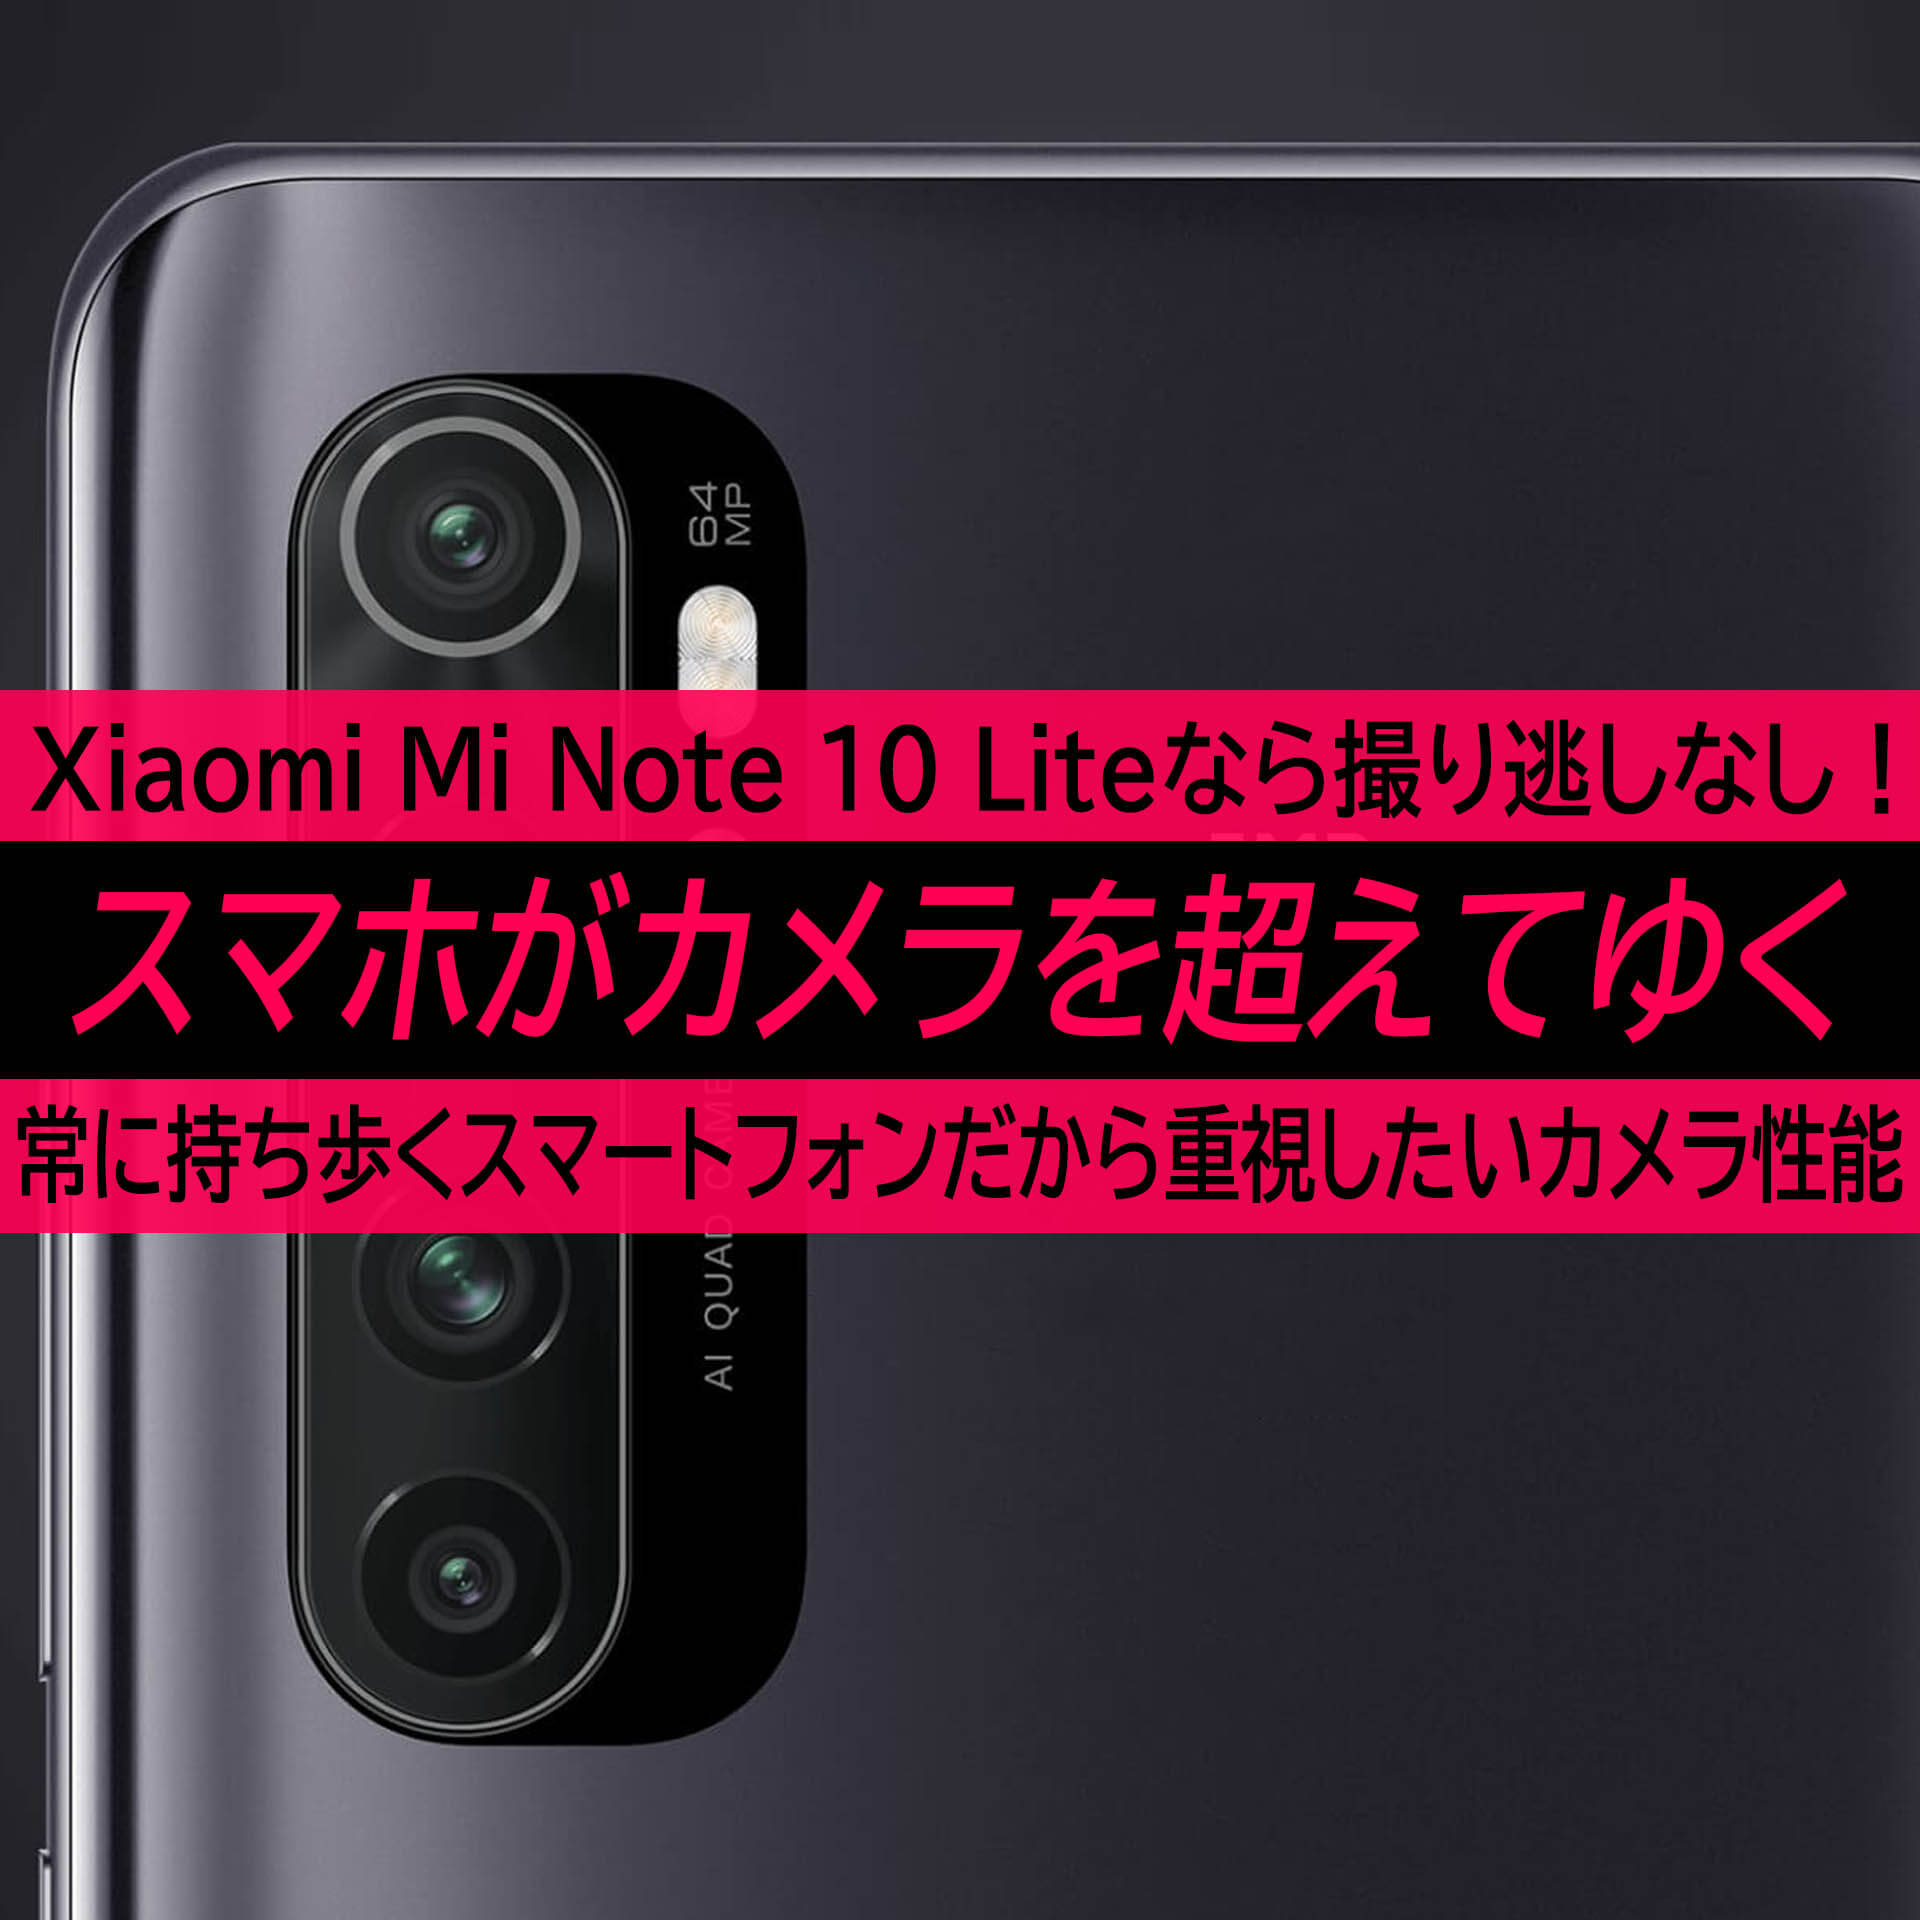 Xiaomi Mi Note 10 Liteは普段持ち歩くから撮り逃しの無い高画質カメラ スマホがカメラを超えてゆく ハイパーガジェット通信